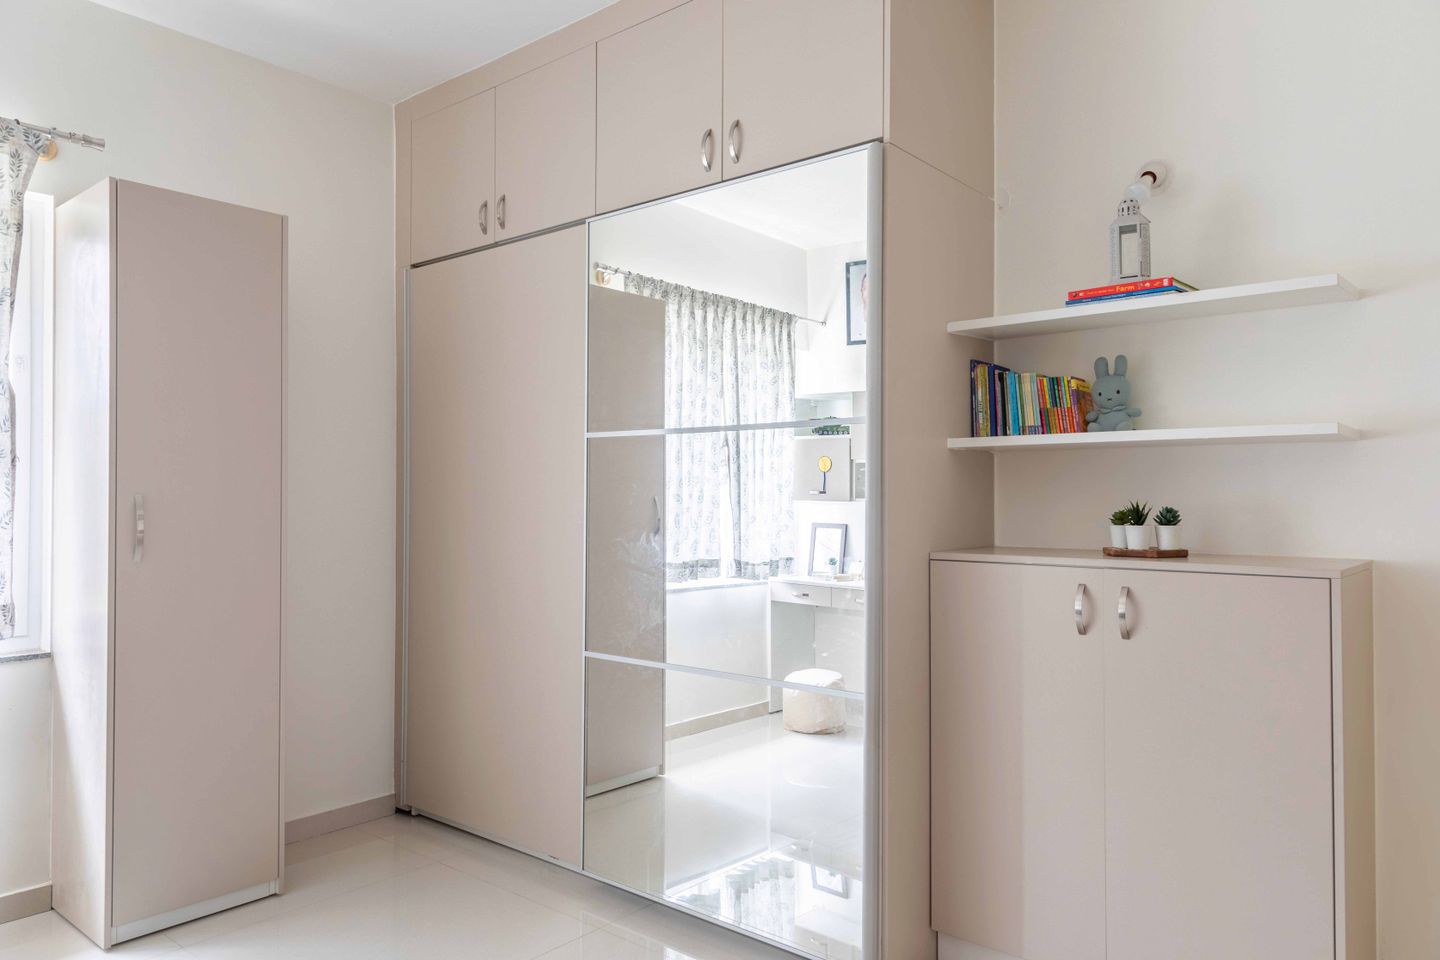 Mirrored 2-Door Grey Sliding Door Wardrobe With Two Storage Units - Livspace